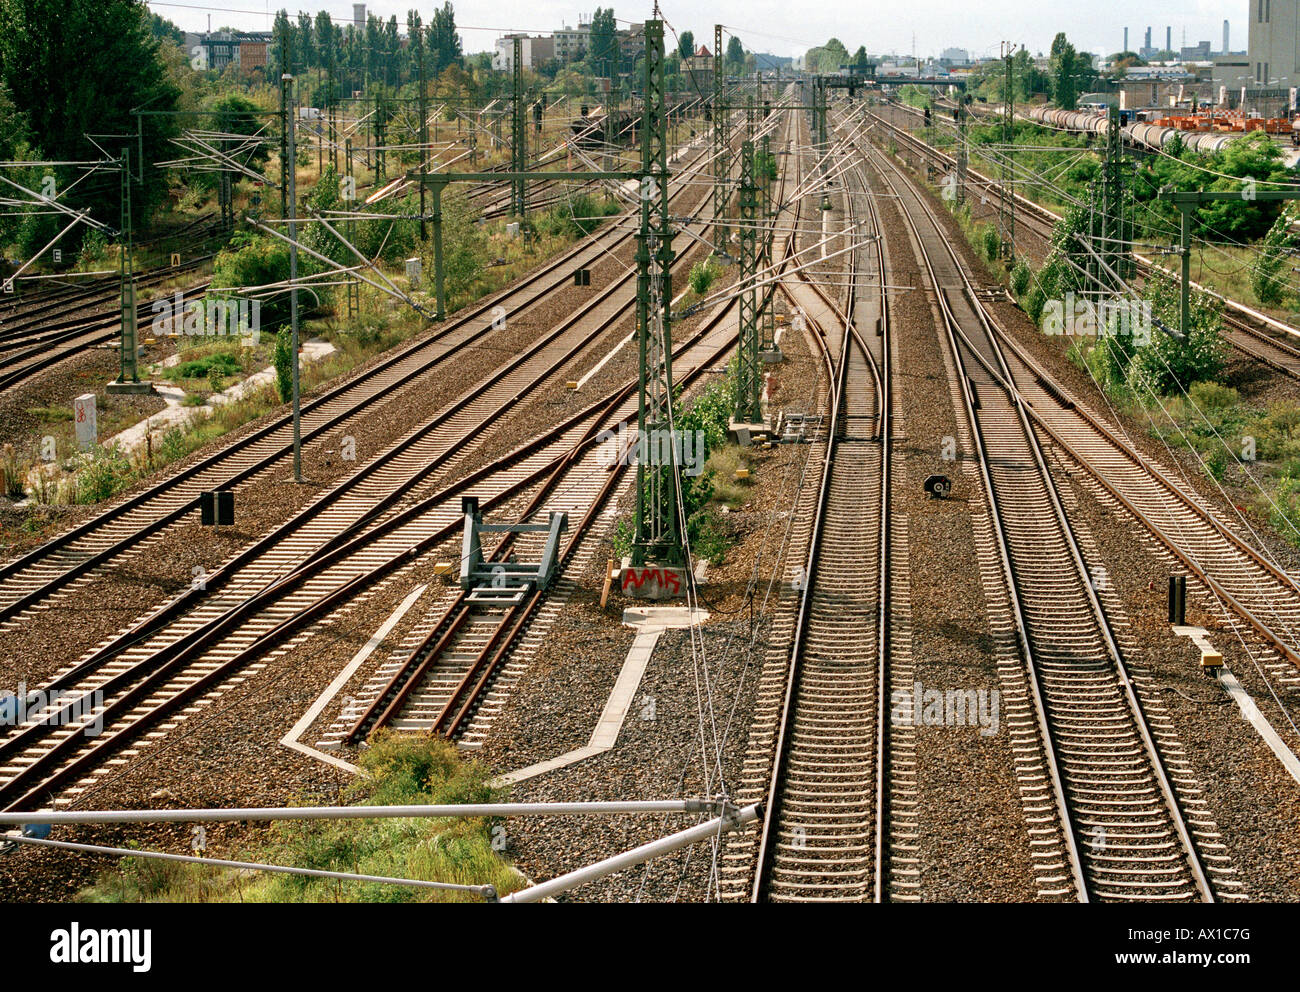 Germany, Berlin, empty railroad tracks Stock Photo